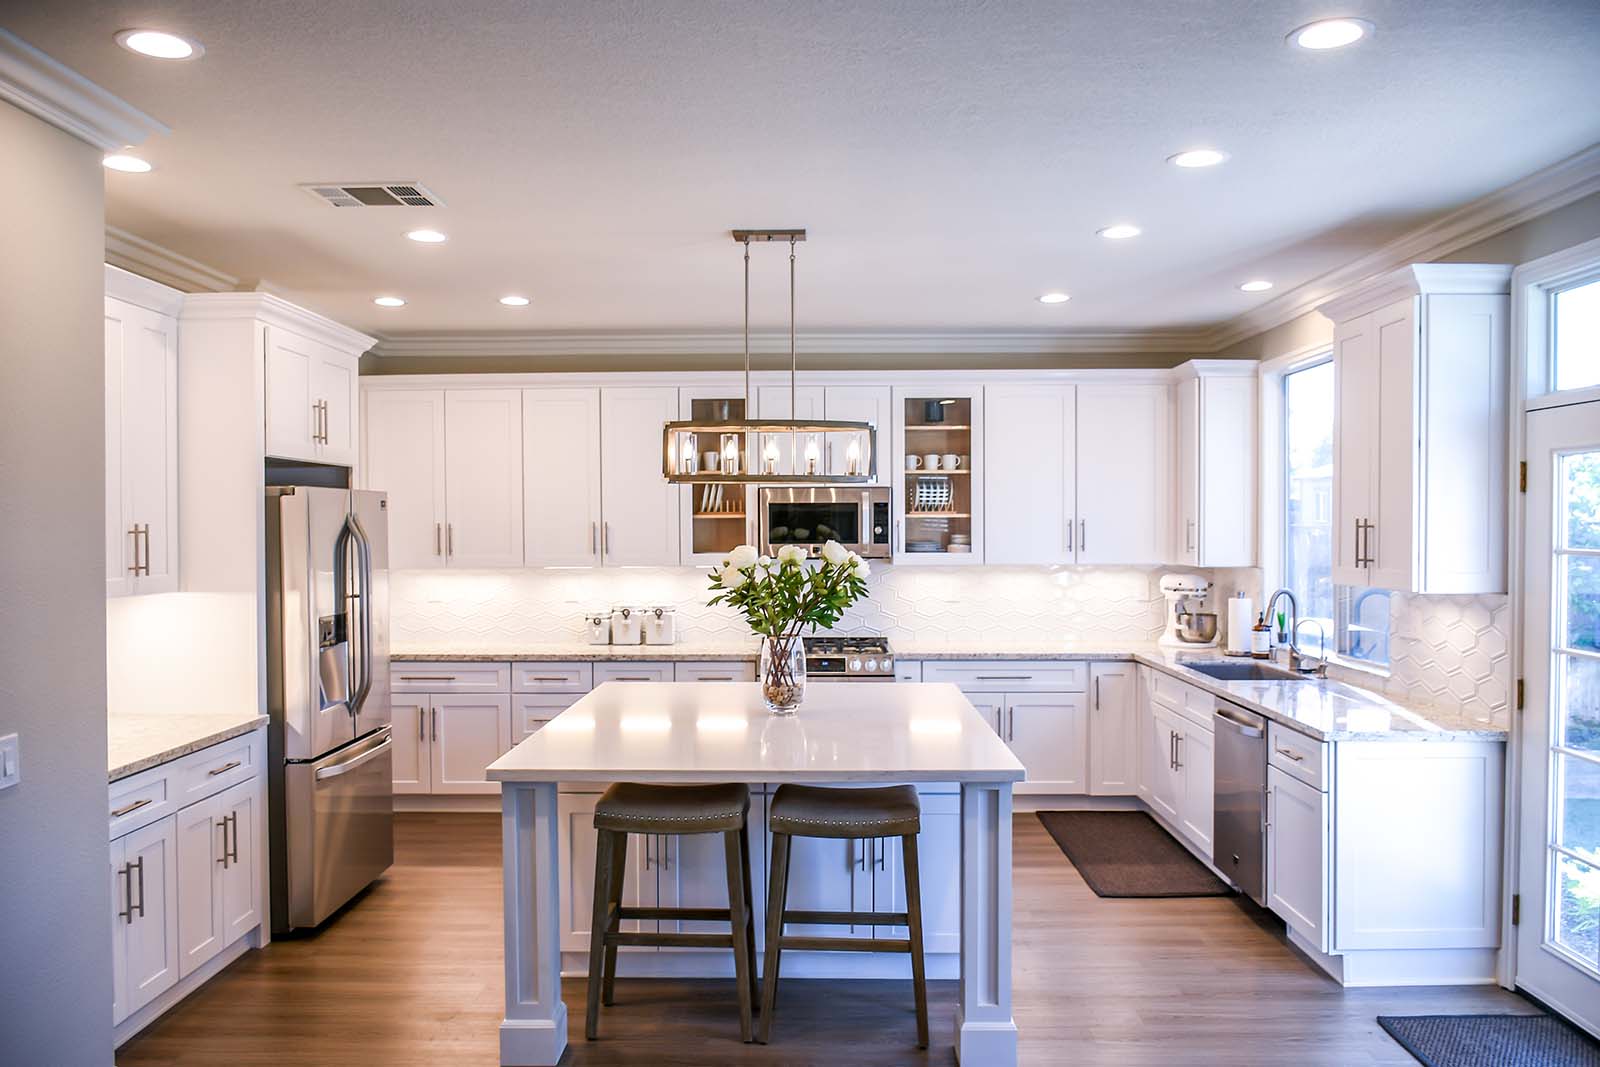 Elegant kitchen with under cabinet lighting